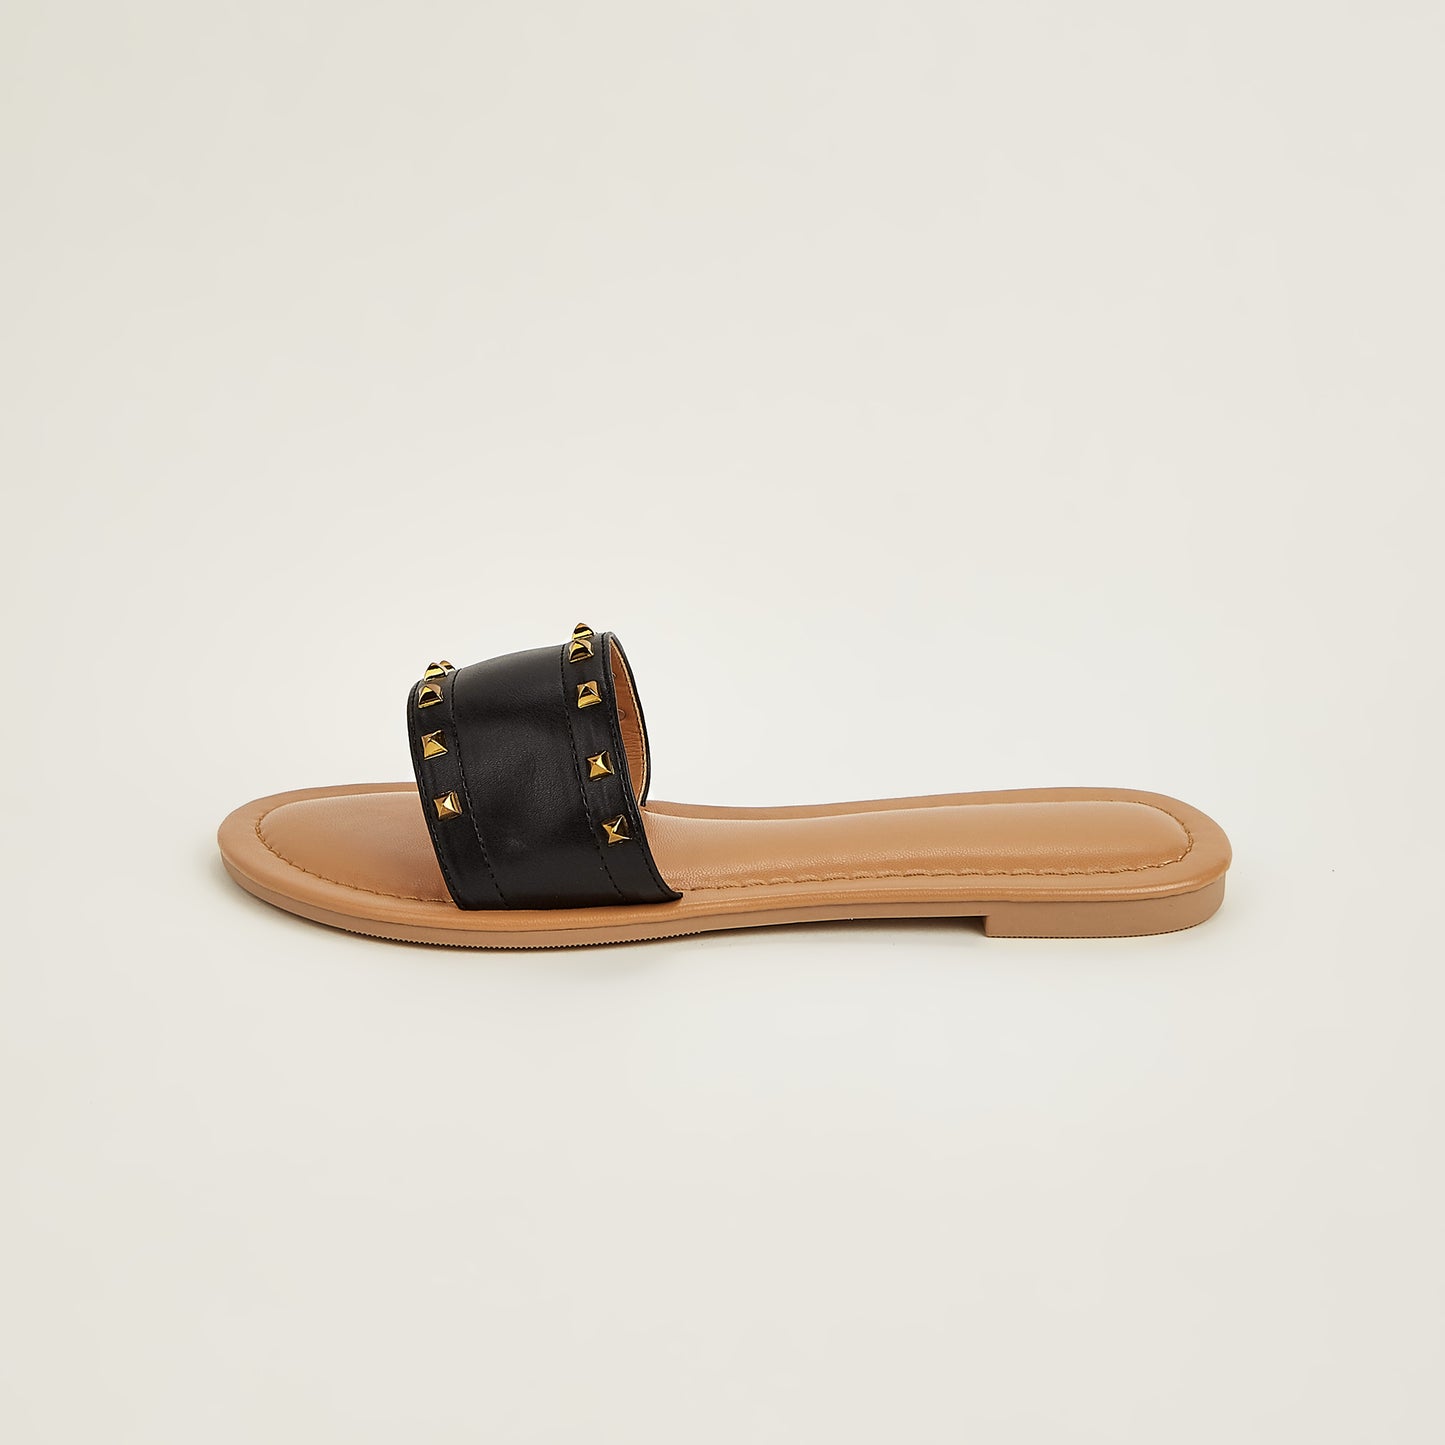 Flat Slide Sandals for Women Dressy Summer Studded Slip On Sandals